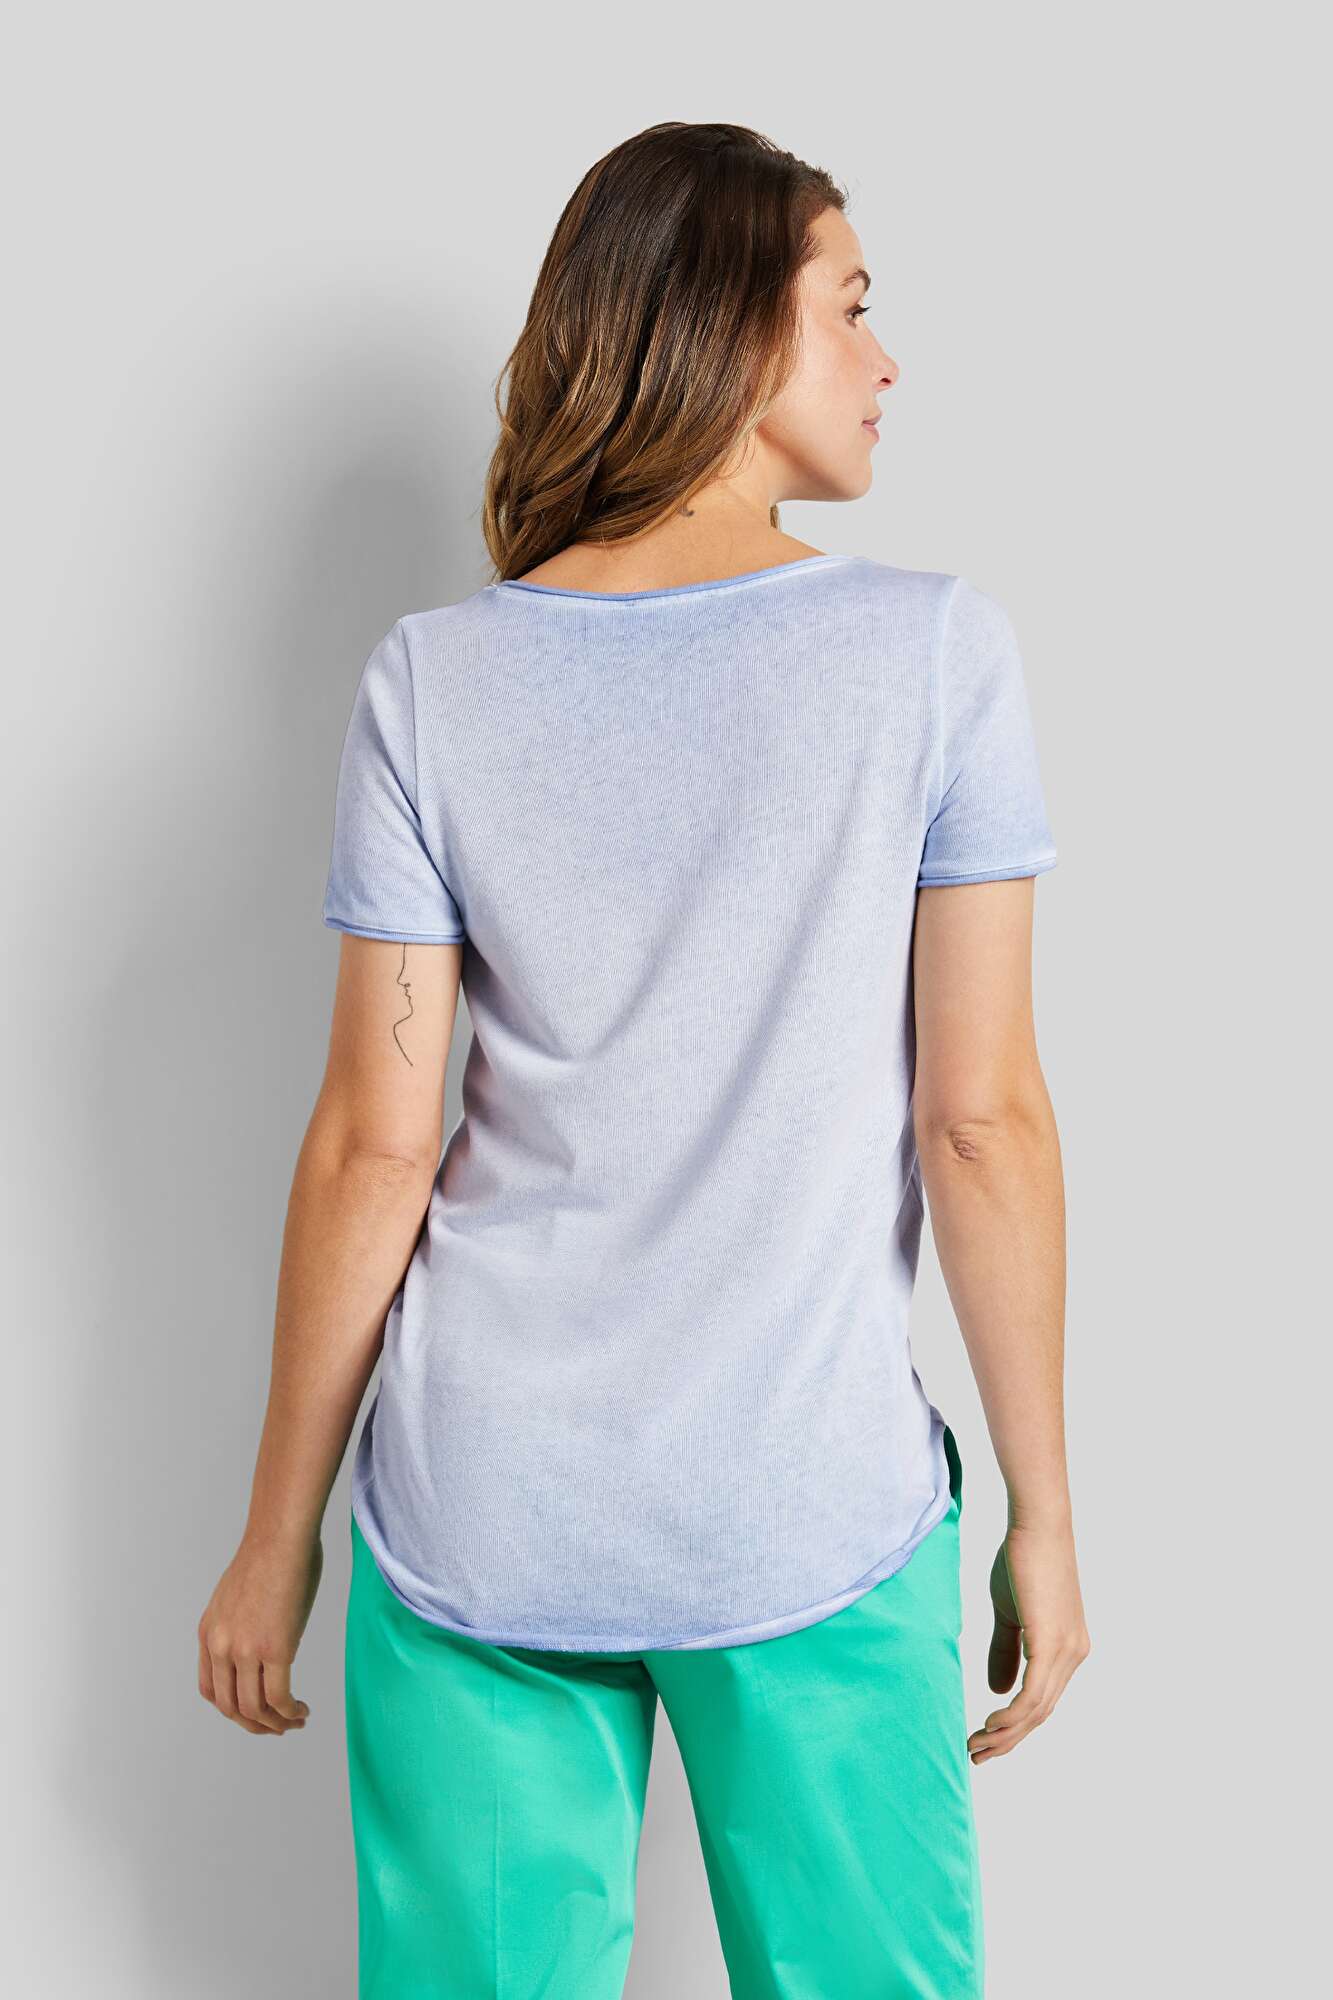 Rundhals T-shirt mit | in Optik hellblau bugatti verwaschener leicht